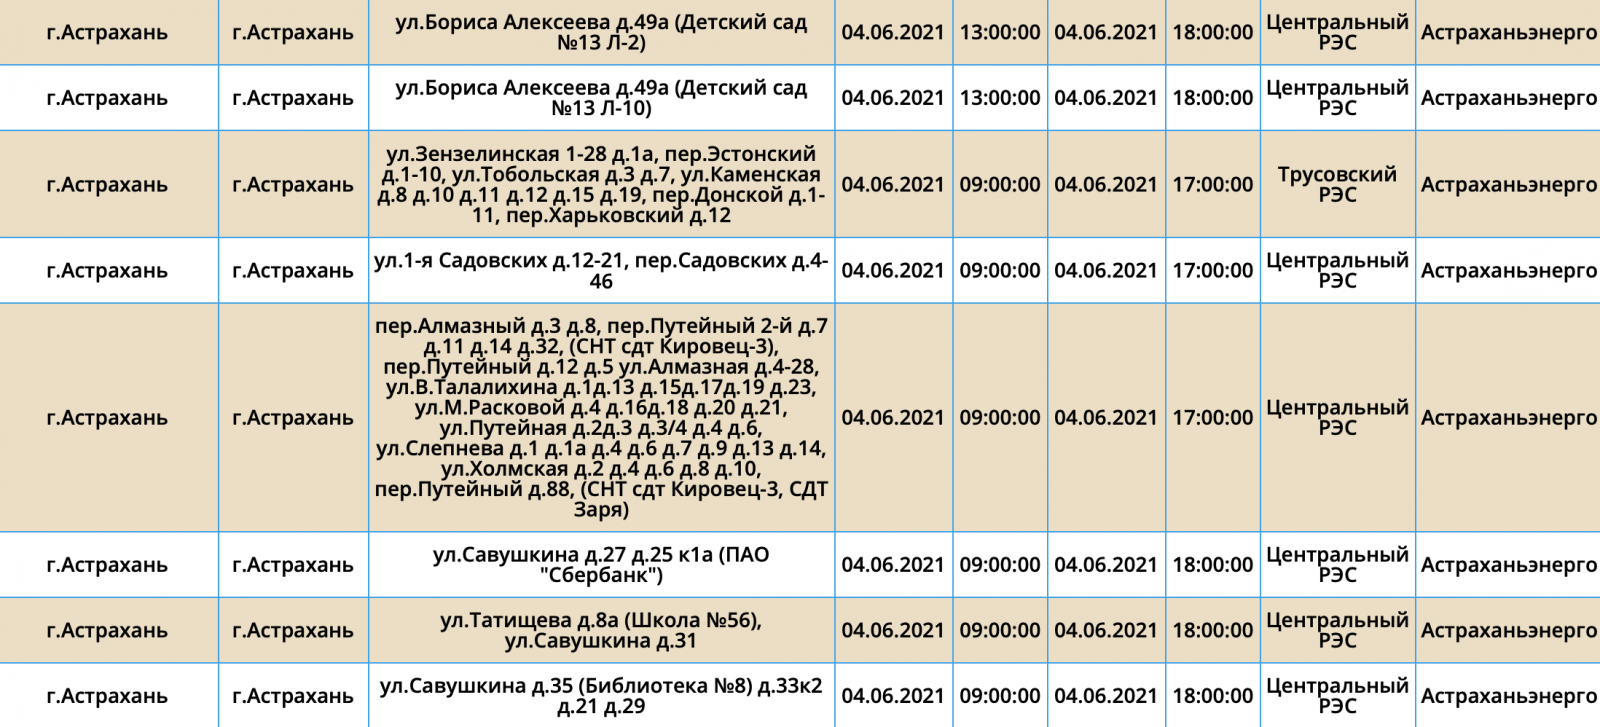 Плановое отключение электроэнергии Астрахань. График отключения электроэнергии Астрахань. Плановые отключения Астрахань. Плановое отключение электроэнергии Астрахань сегодня. М5 астрахань расписание